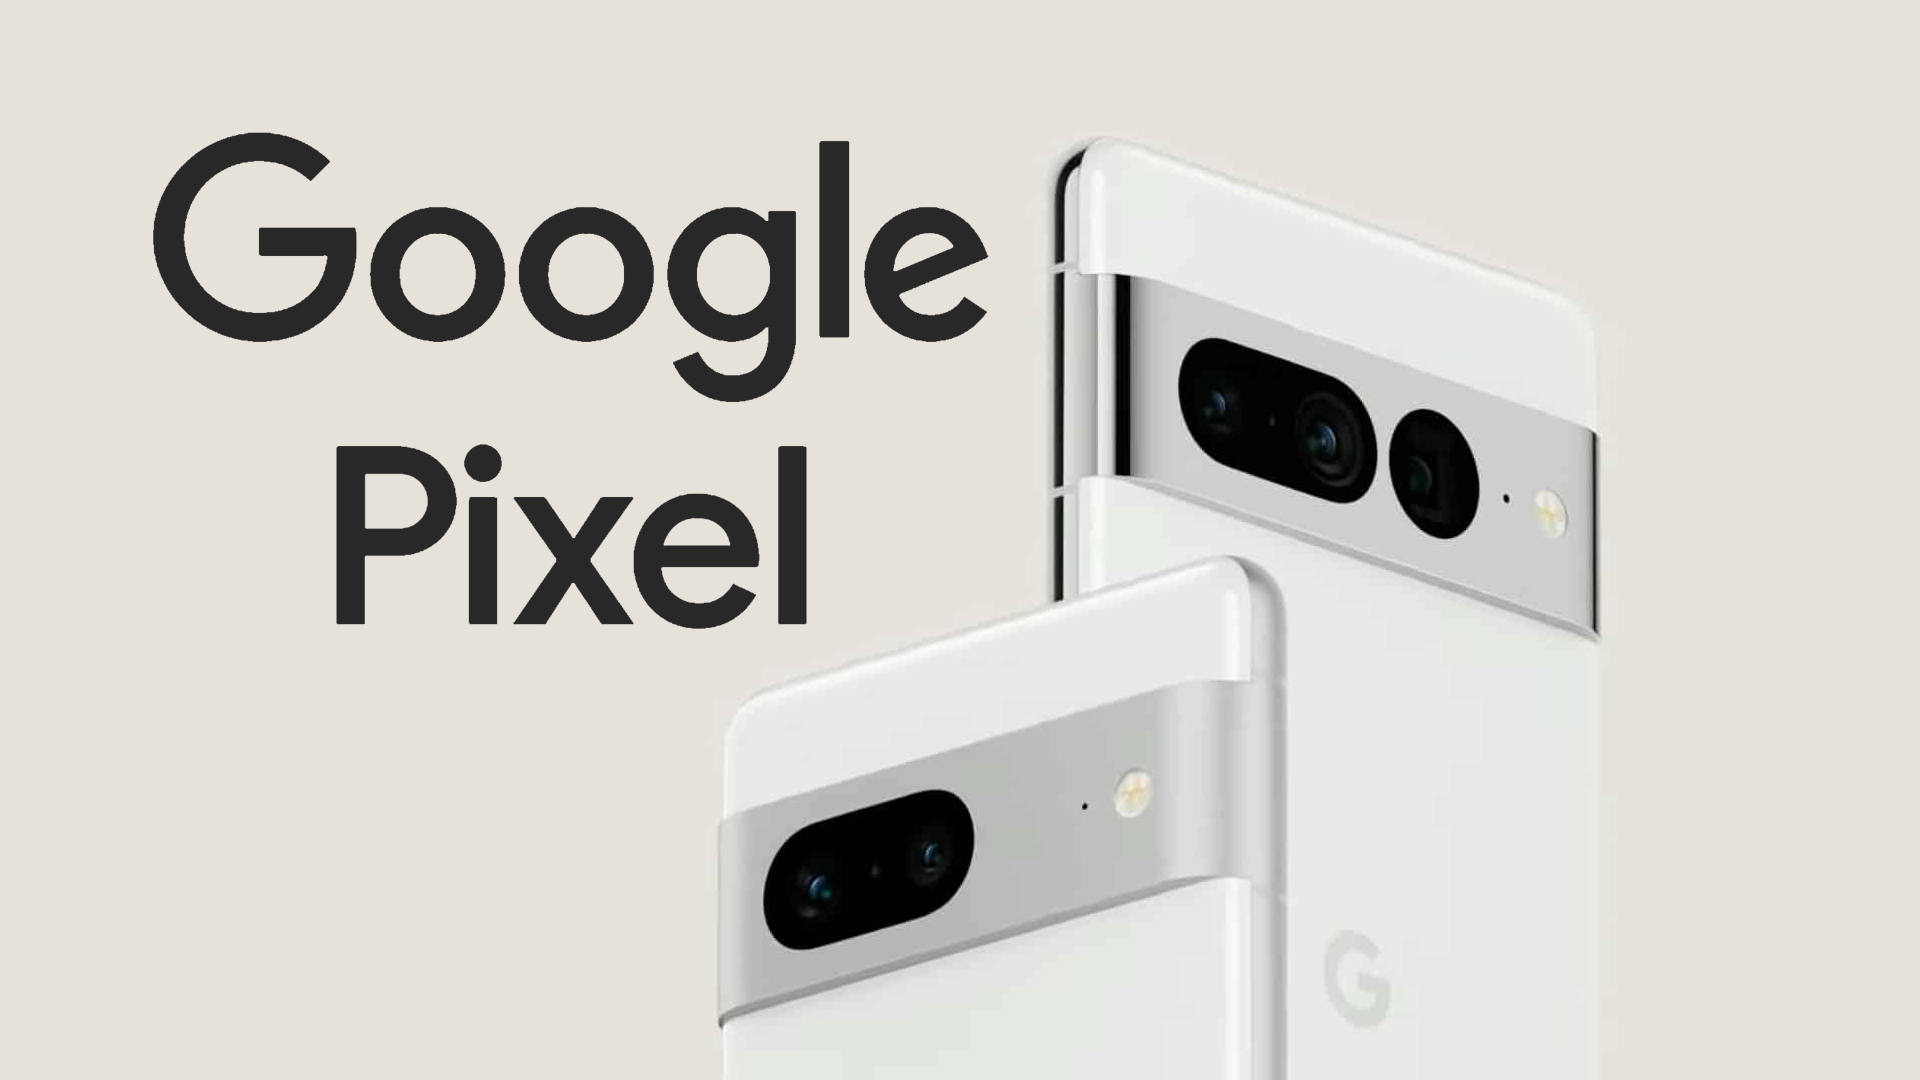 طراحی دوربین گوگل پیکسل سری ۷